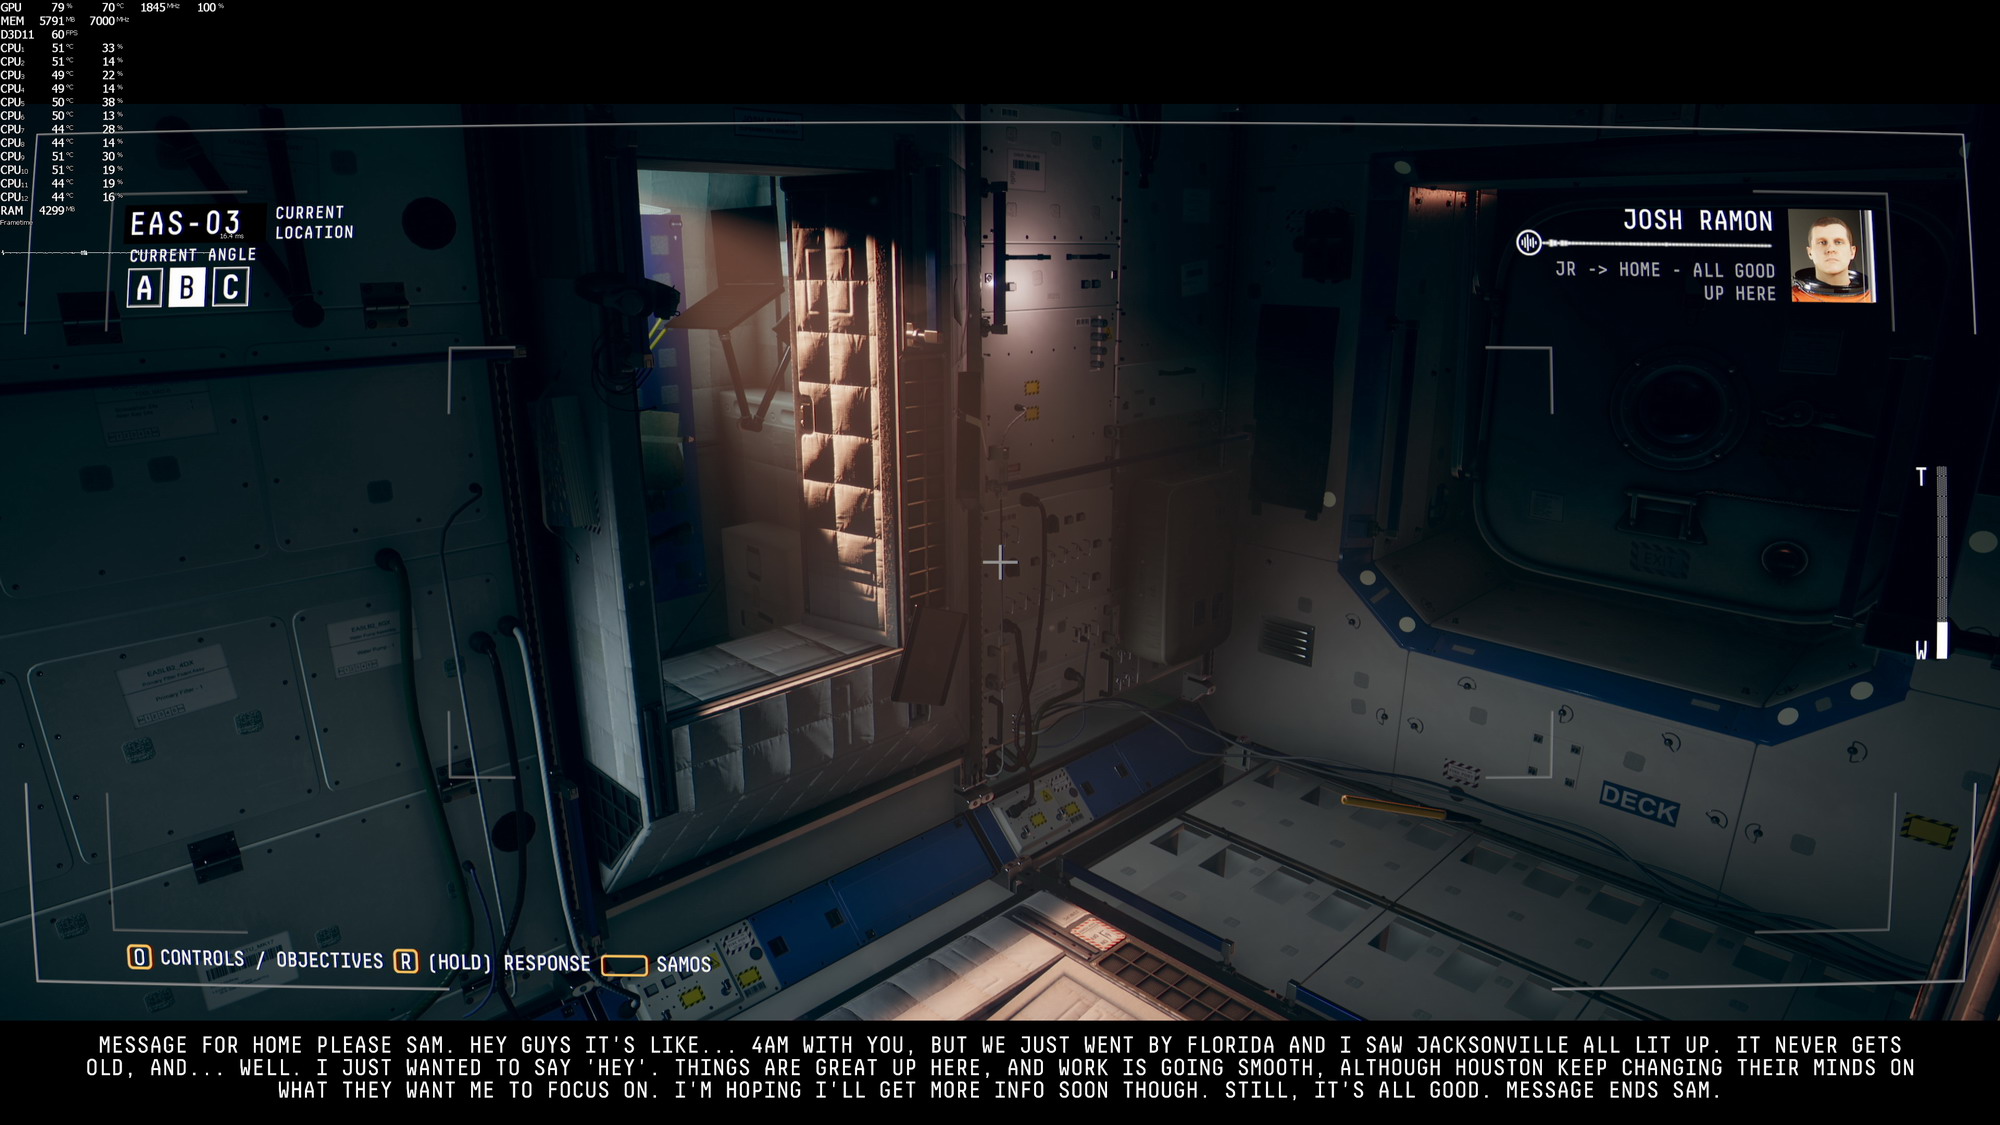 科幻恐怖游戏《观察》高清截图 画面不错细节到位